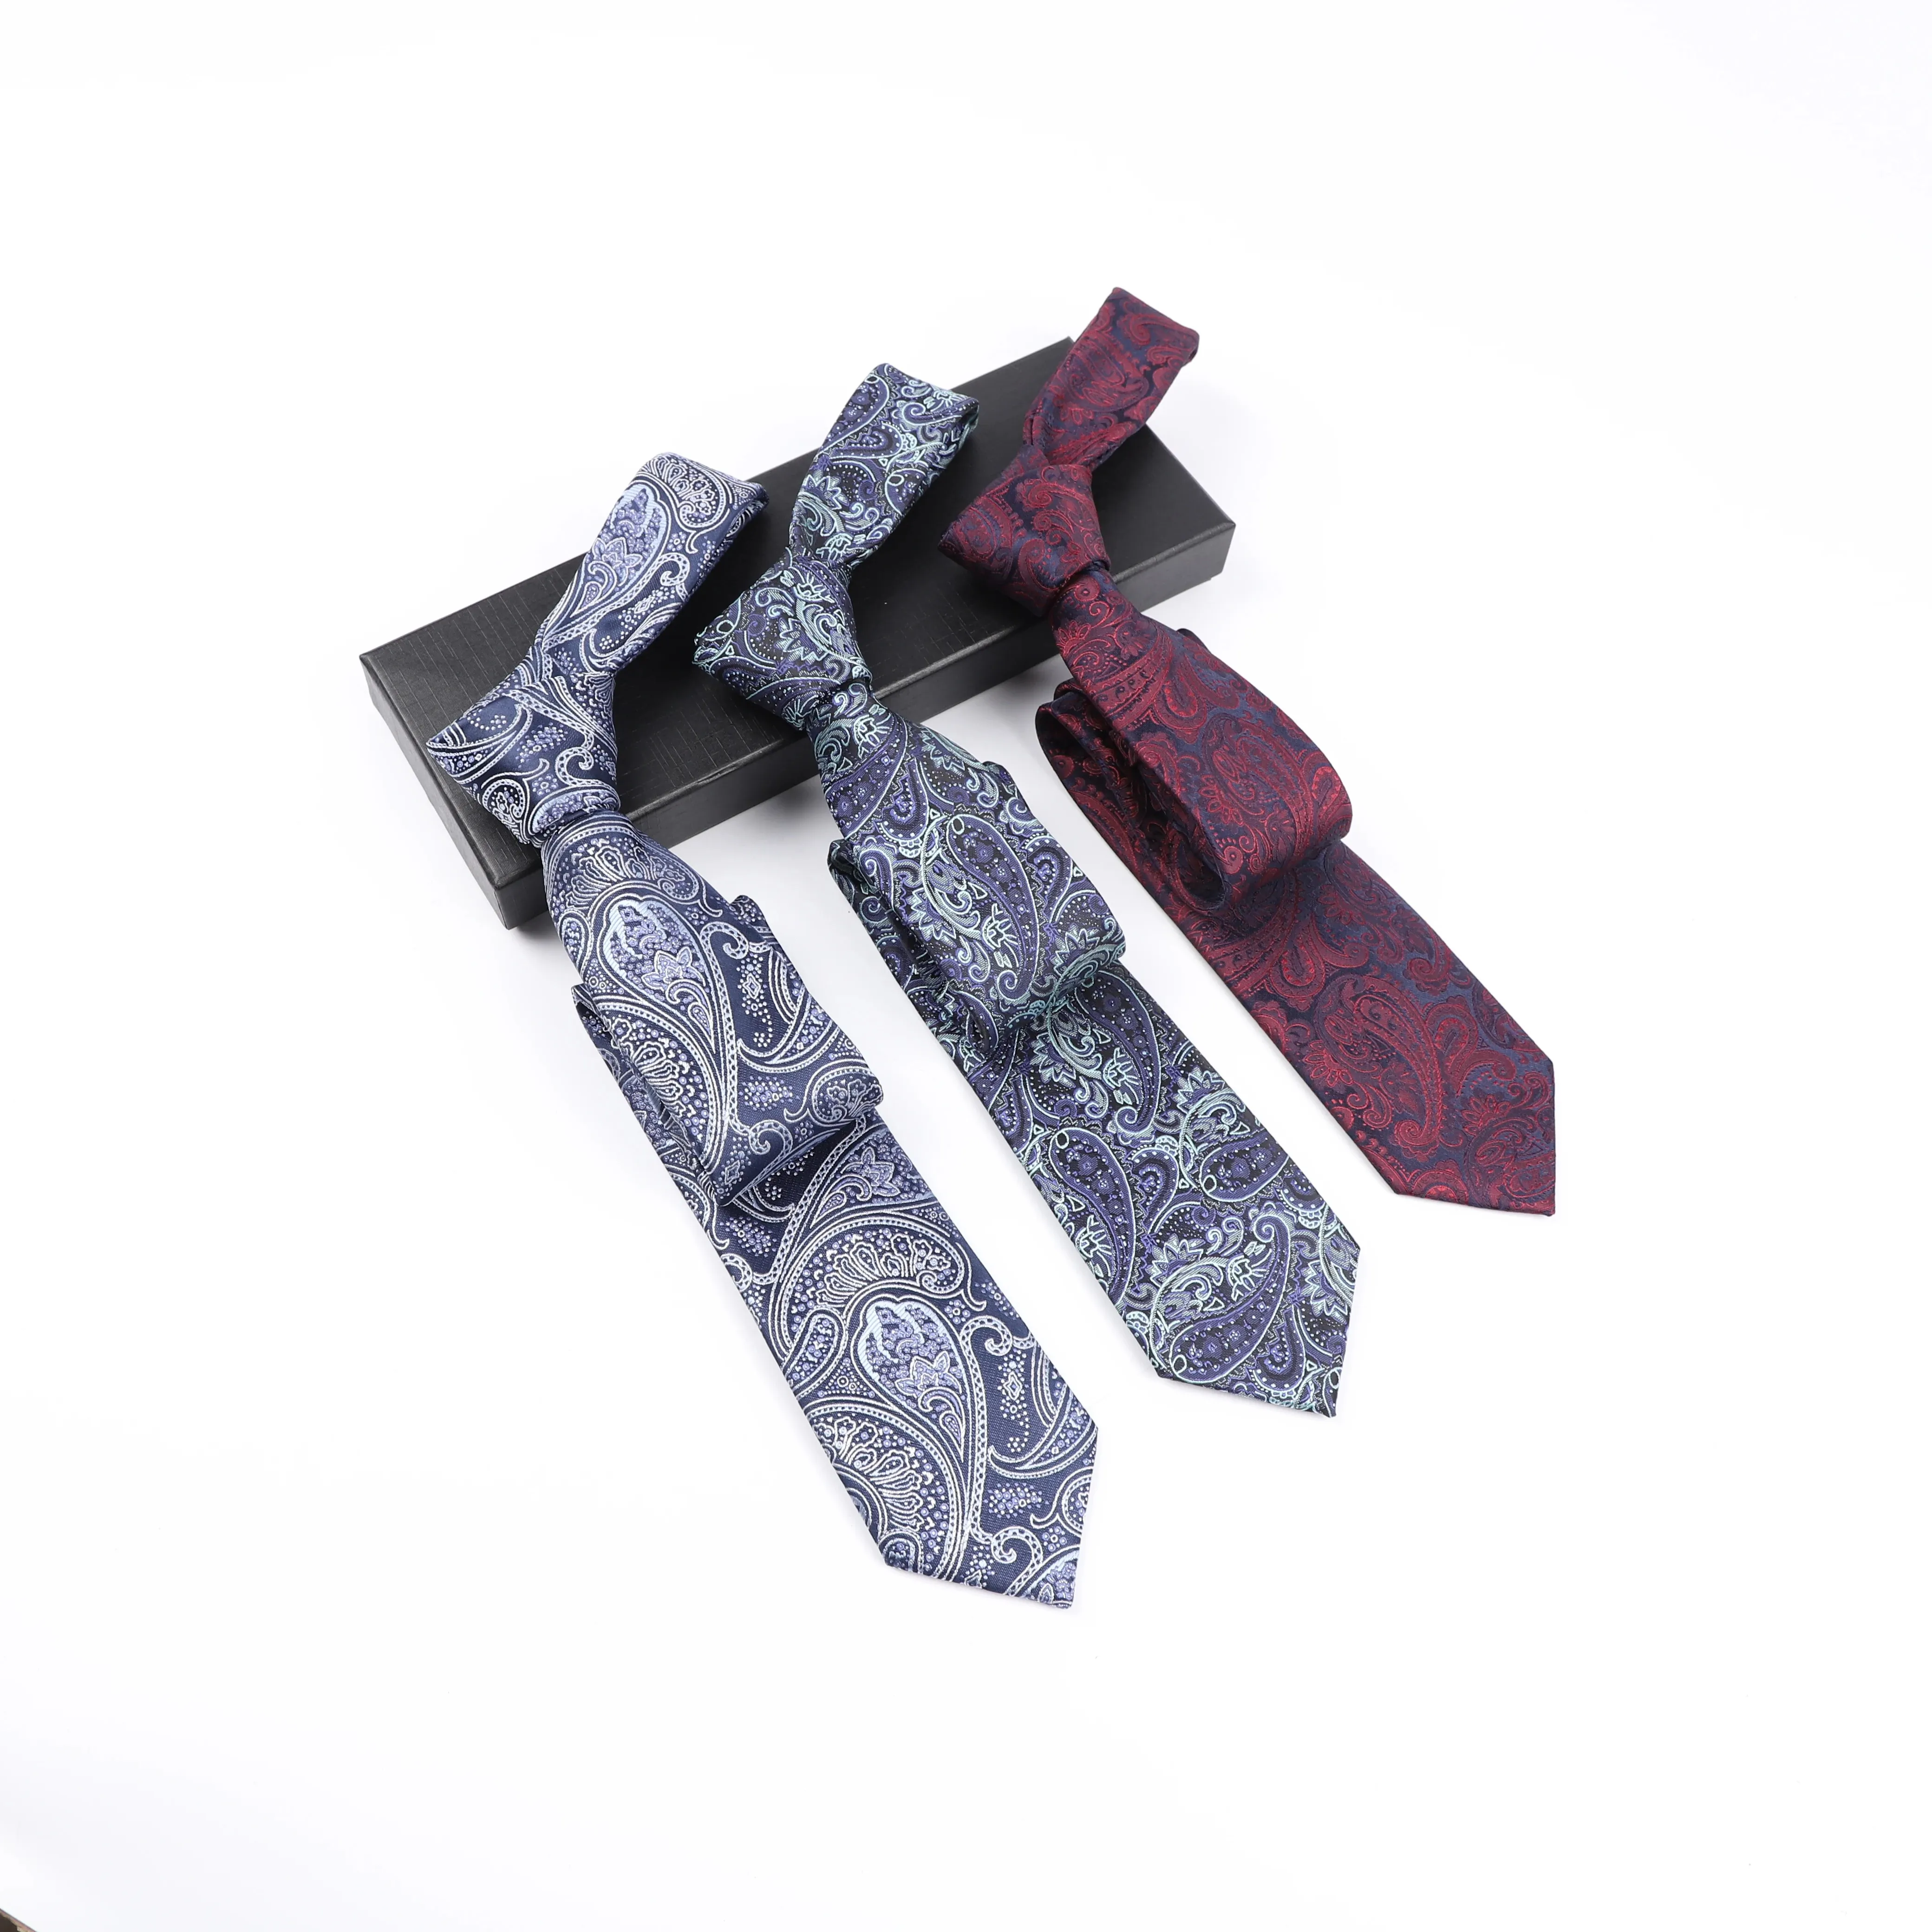 Novo requintado padrão floral Jacquard gravatas estilo Vintage microfibra poliéster gravatas para homens